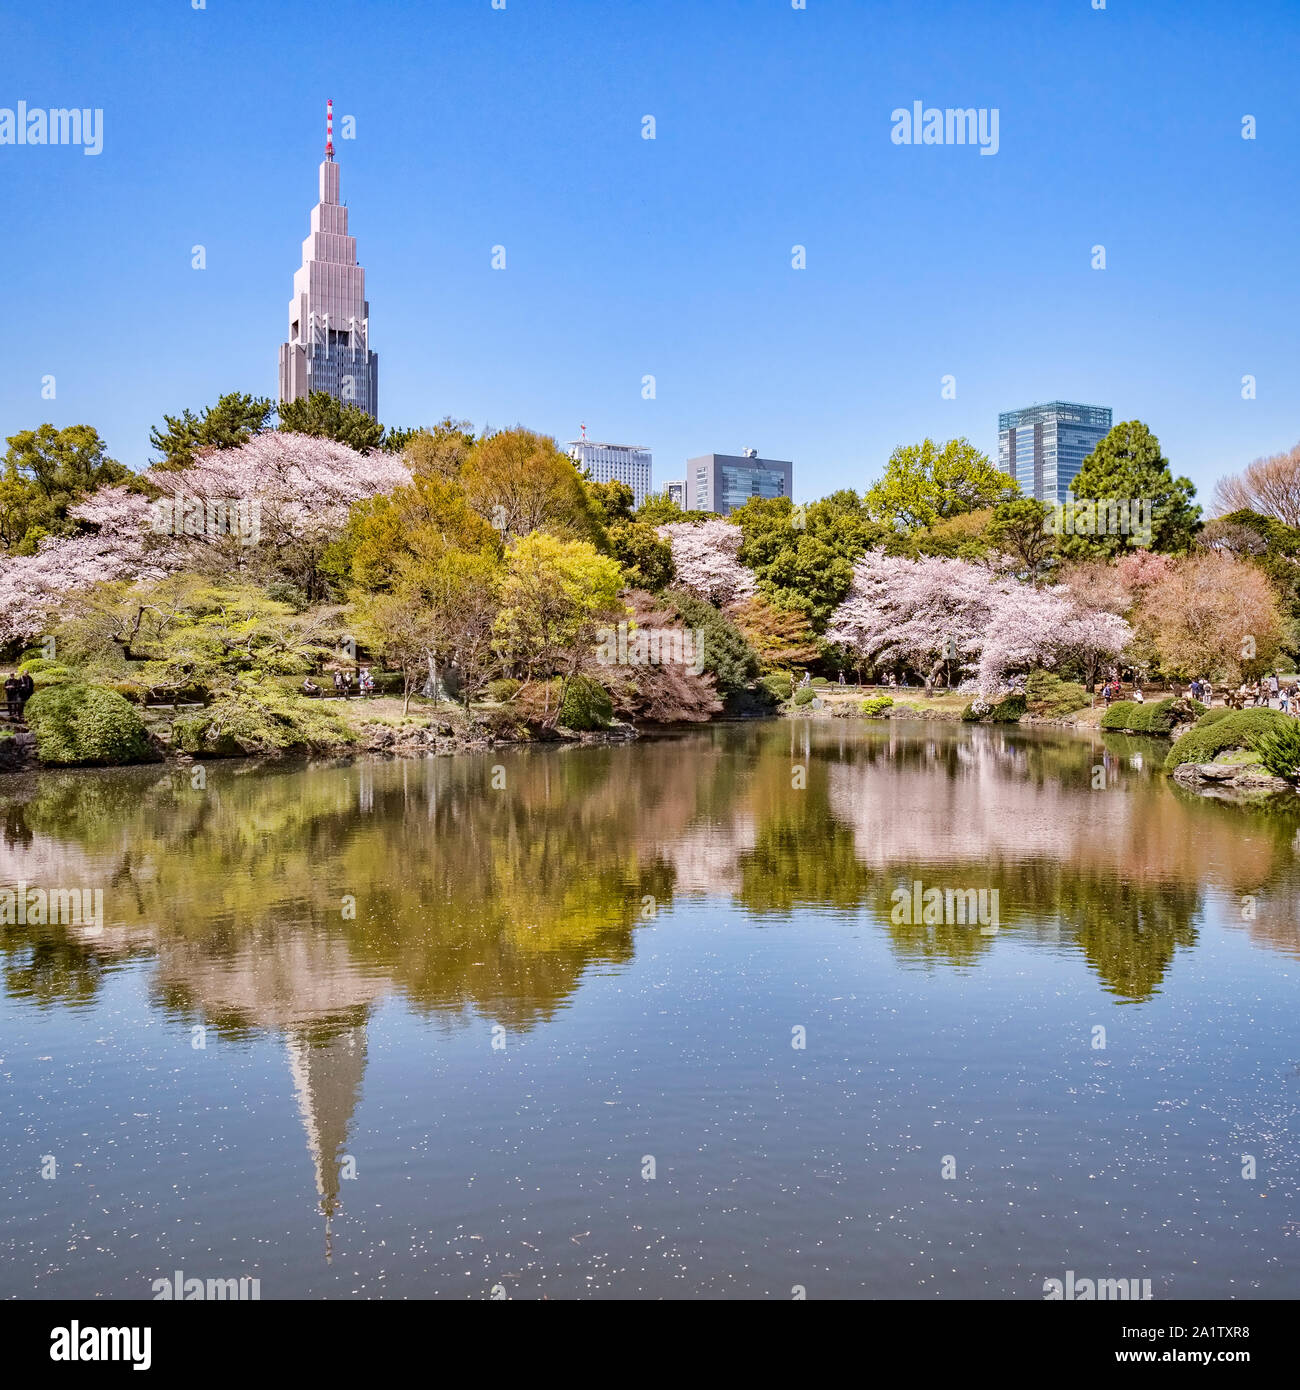 4 Aprile 2019: Tokyo, Giappone - la fioritura dei ciliegi e edifici di Shinjuku si riflette nel lago in Shinjuku Gyoen Giardino Nazionale di Tokyo. Foto Stock